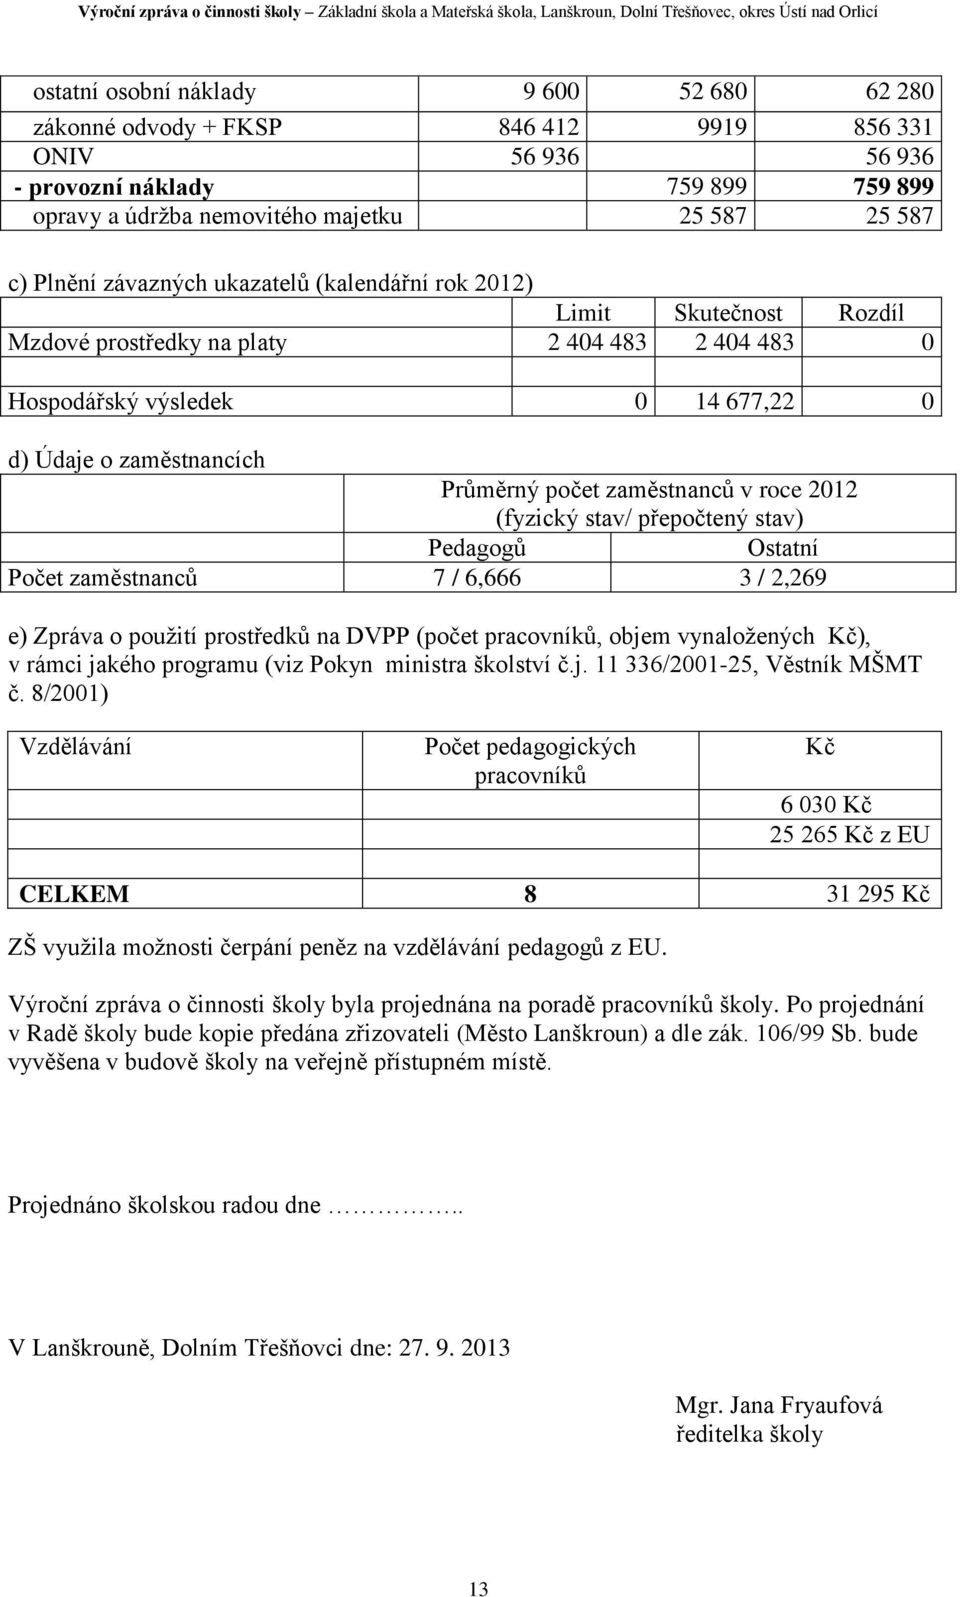 zaměstnanců v roce 2012 (fyzický stav/ přepočtený stav) Pedagogů Ostatní Počet zaměstnanců 7 / 6,666 3 / 2,269 e) Zpráva o použití prostředků na DVPP (počet pracovníků, objem vynaložených Kč), v